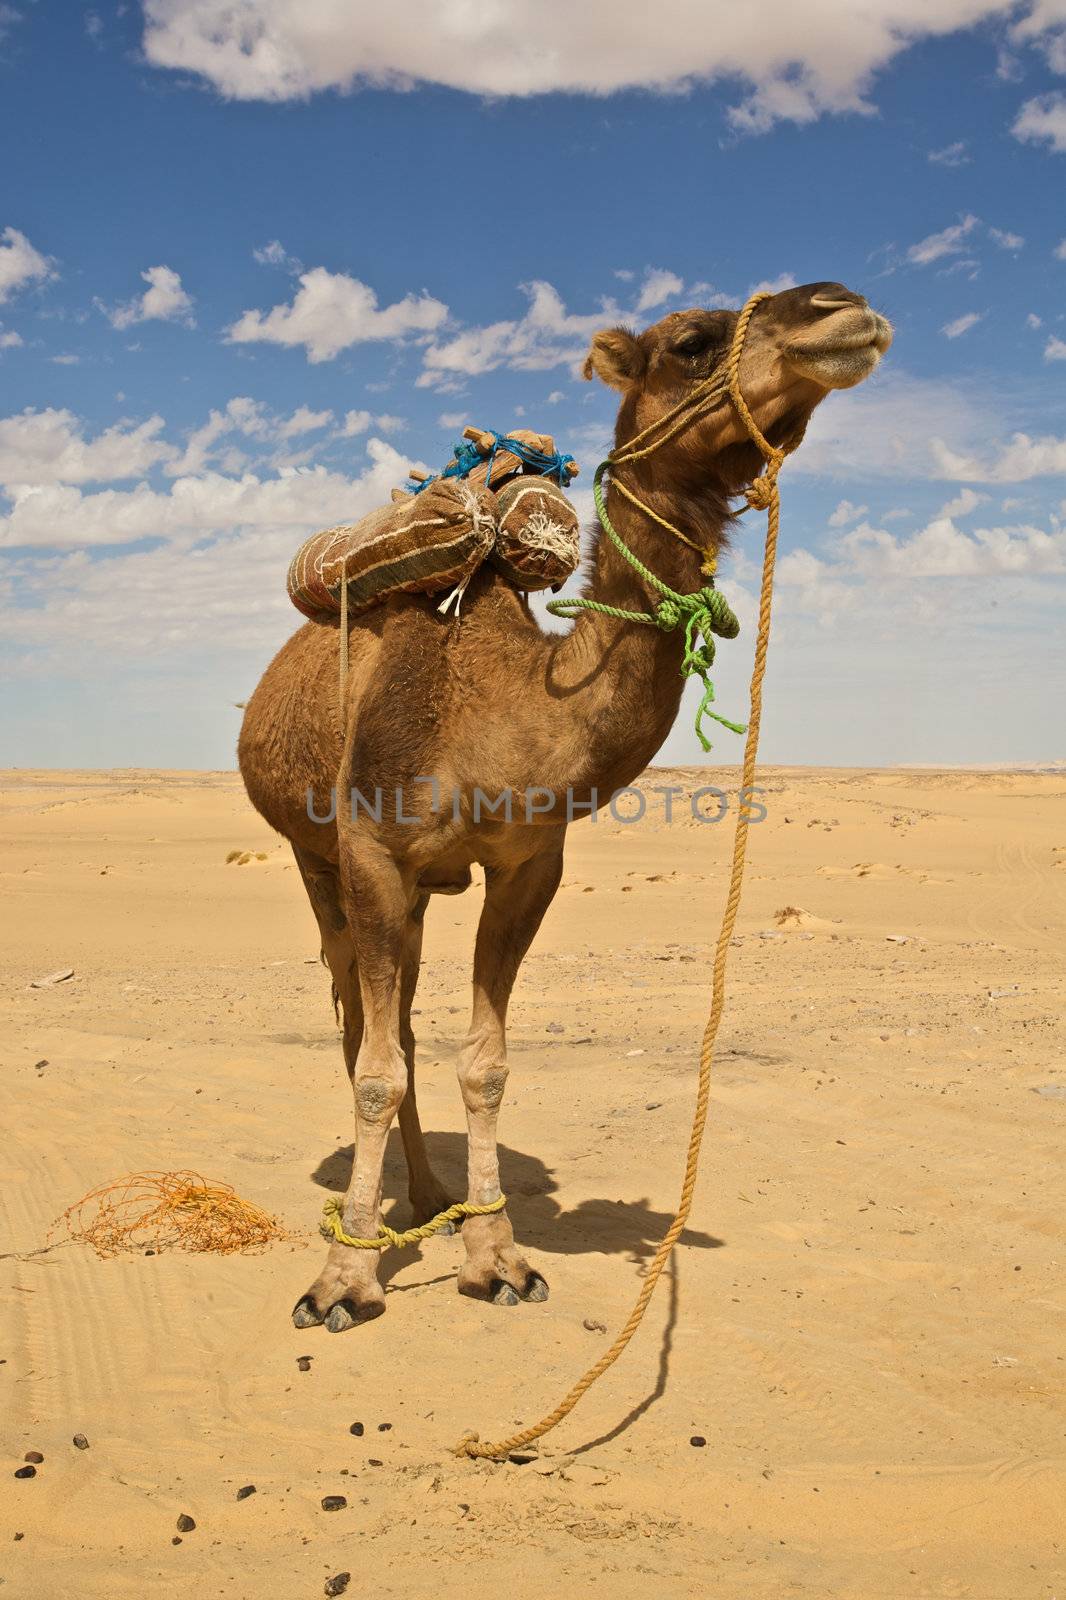 Egypt, camel in the Sahara desert